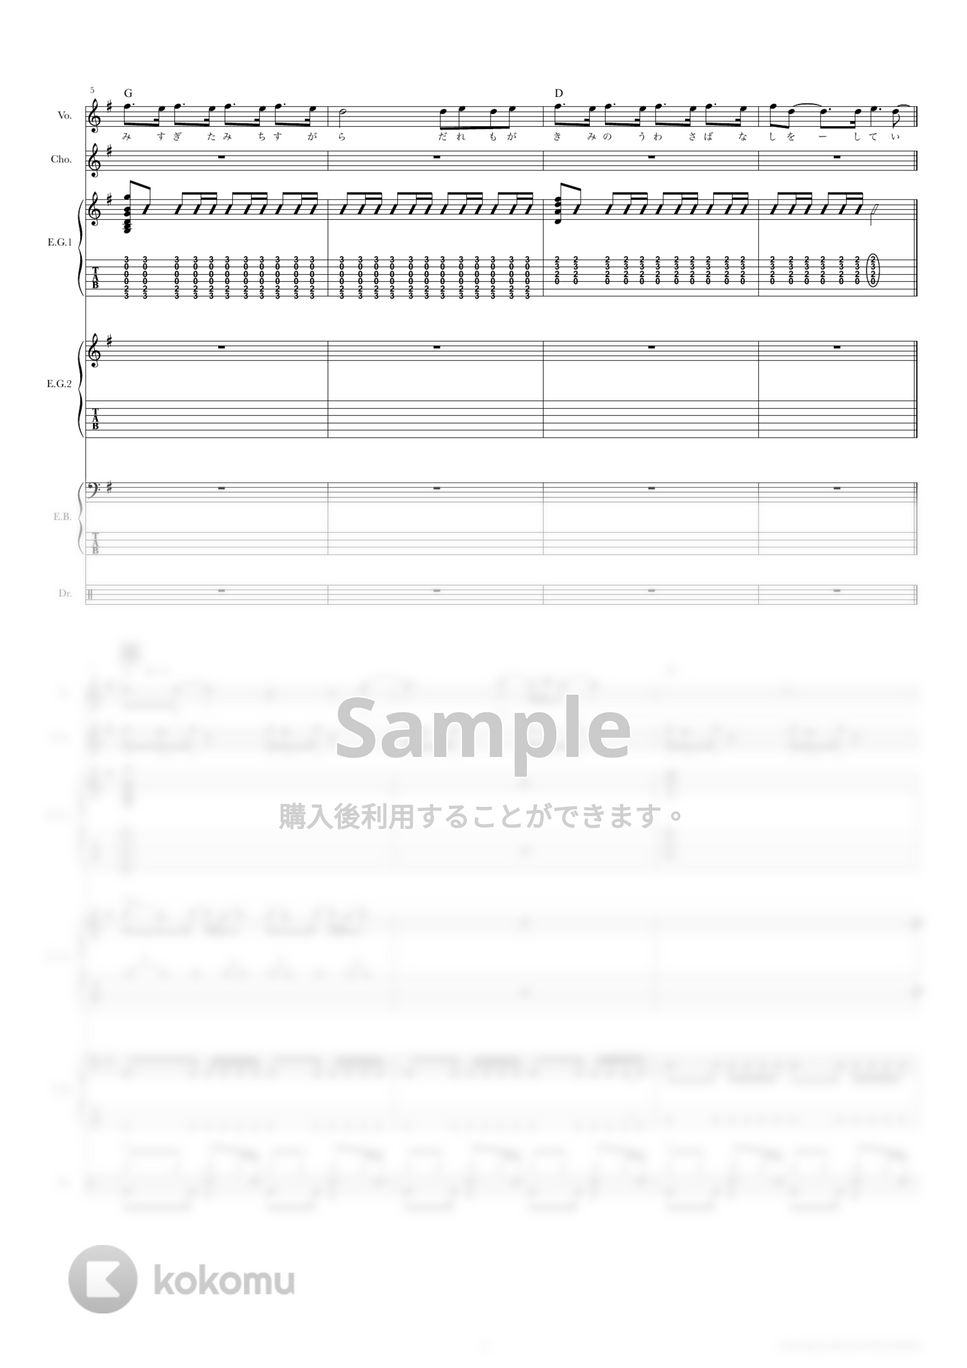 きのこ帝国 - パラノイドパレード (バンドスコア) by TRIAD GUITAR SCHOOL